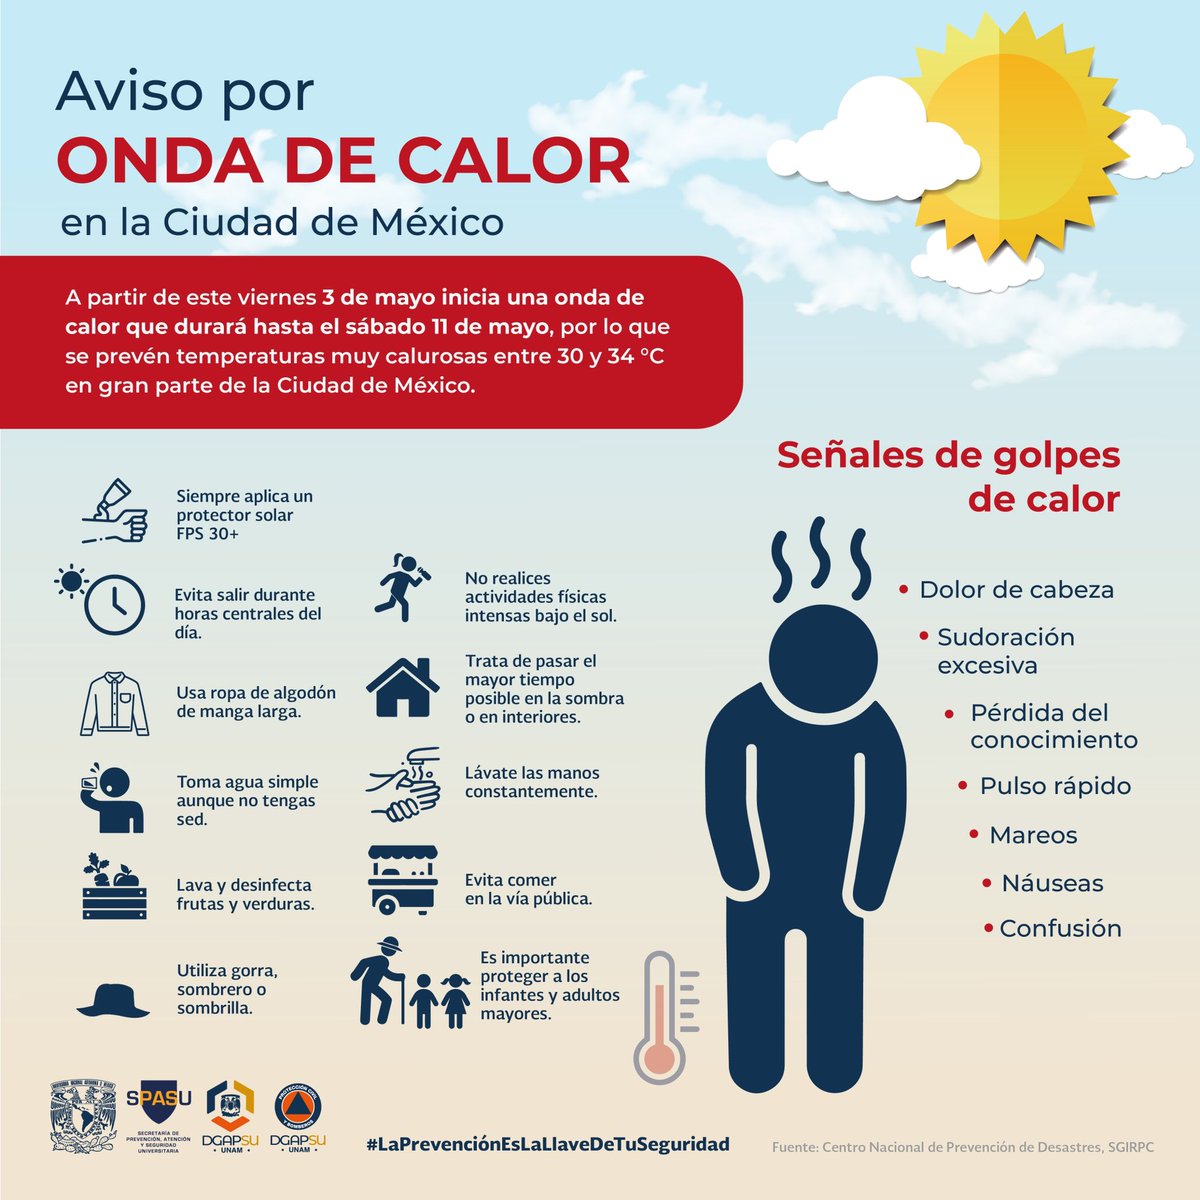 🌞 ¡Prepárate para el calor! Del 3 al 11 de mayo, la Ciudad de México experimentará temperaturas entre 30 y 34 °C. ¡Protege tu piel y mantente hidratado! #LaPrevenciónEsLaLlaveDeTuSeguridad #FESI #UNAM